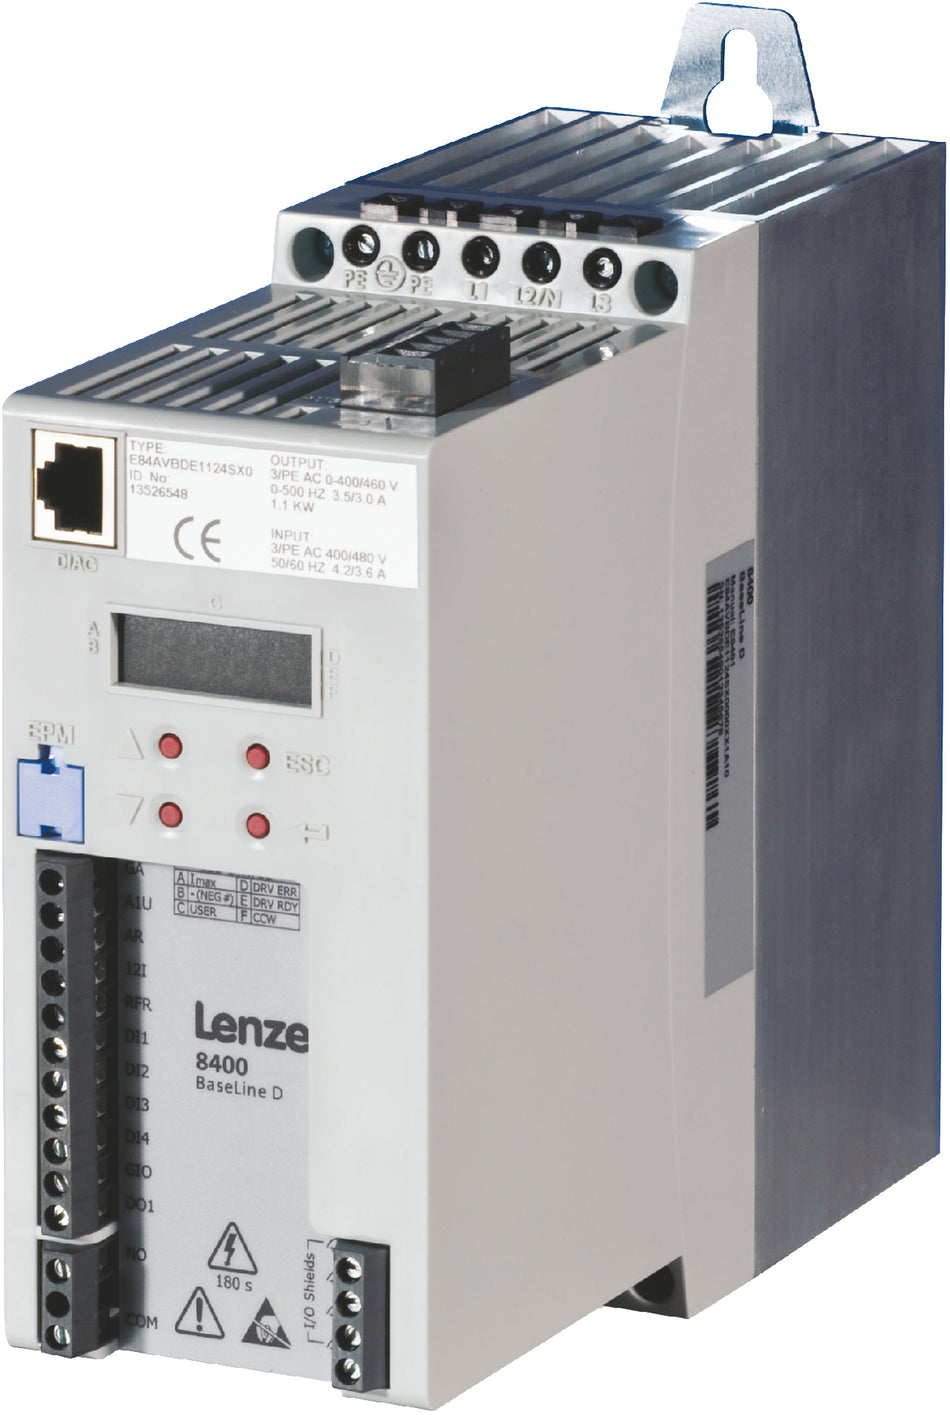 Lenze Inverter Drives 8400 BaseLine - E84AVBDE7514SX0 0.75 kW